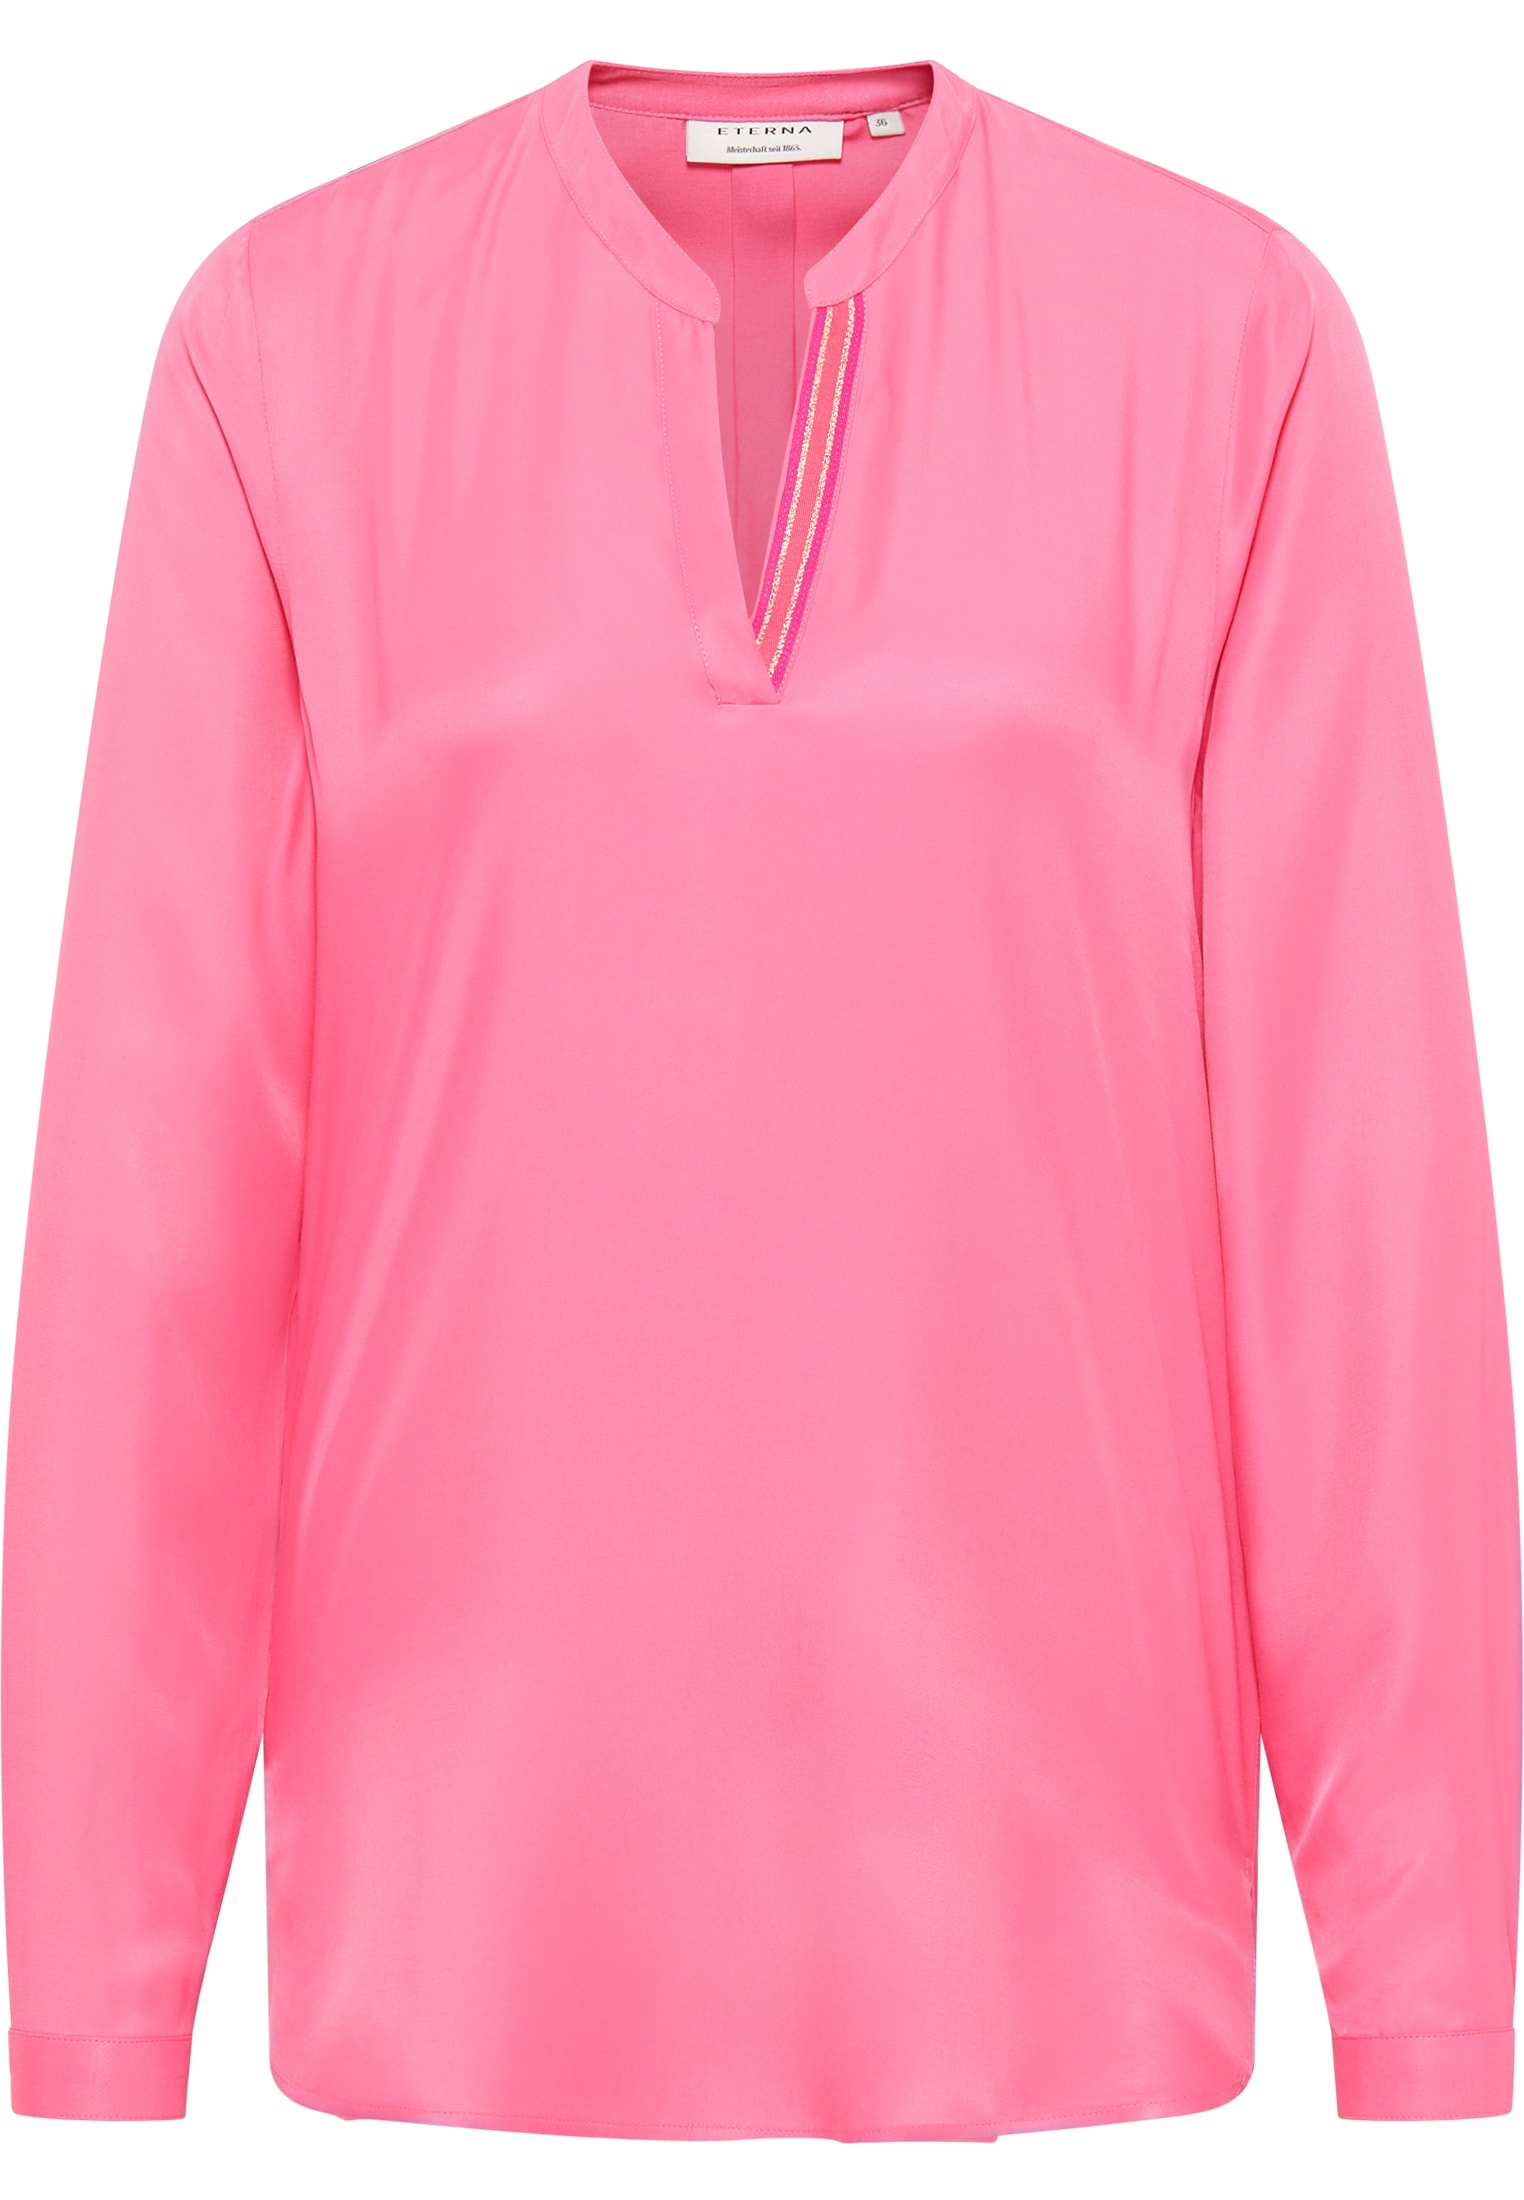 Viscose Shirt Bluse in pink unifarben | pink | 36 | Langarm |  2BL04272-15-21-36-1/1